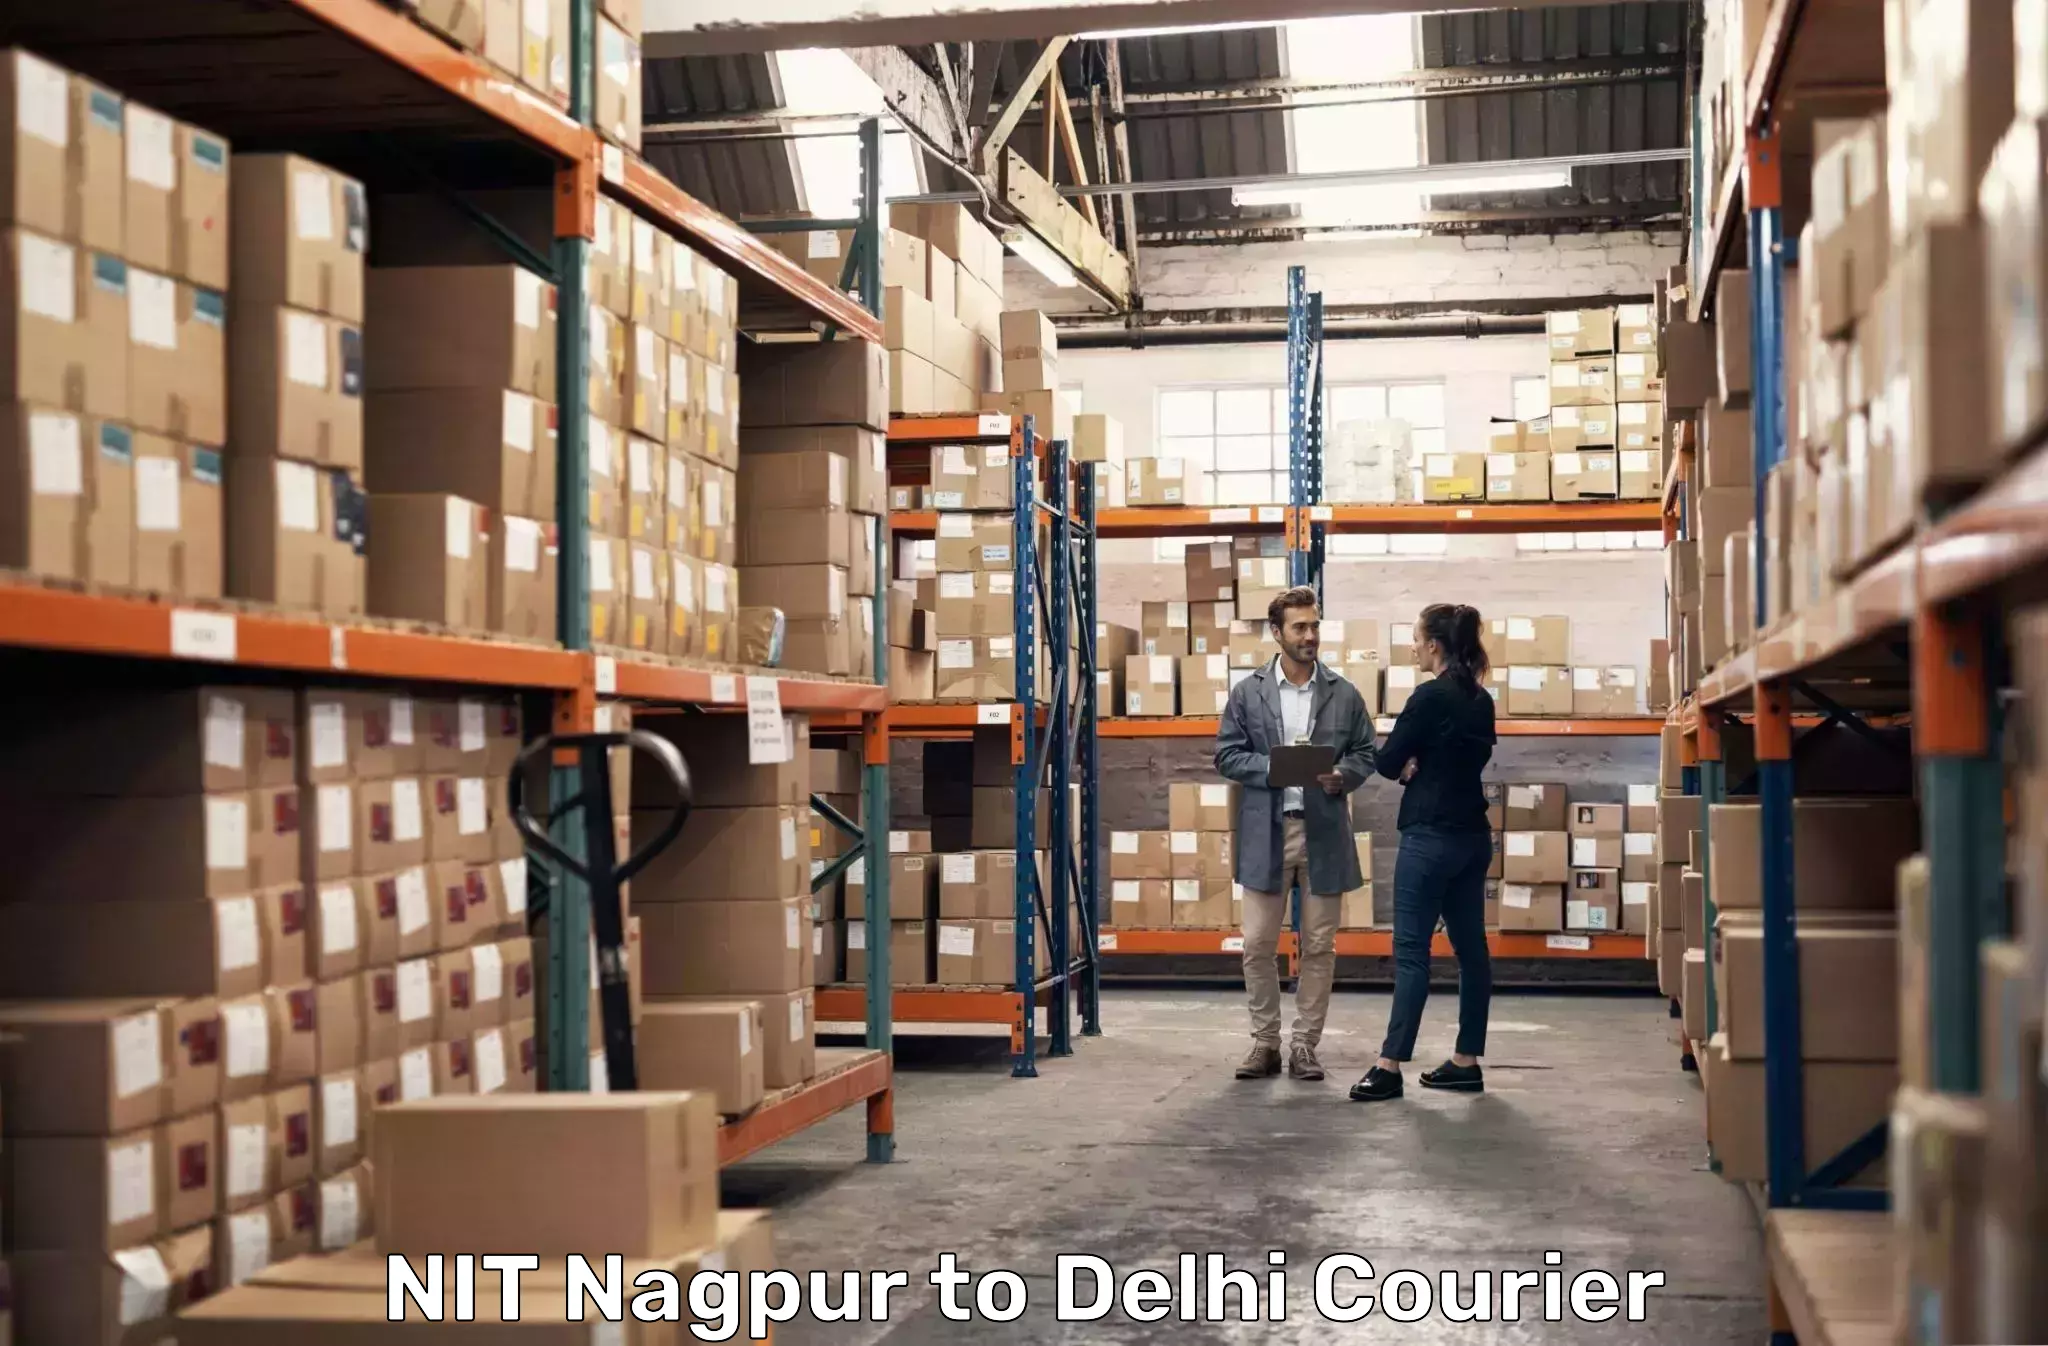 Express package transport NIT Nagpur to Jamia Millia Islamia New Delhi